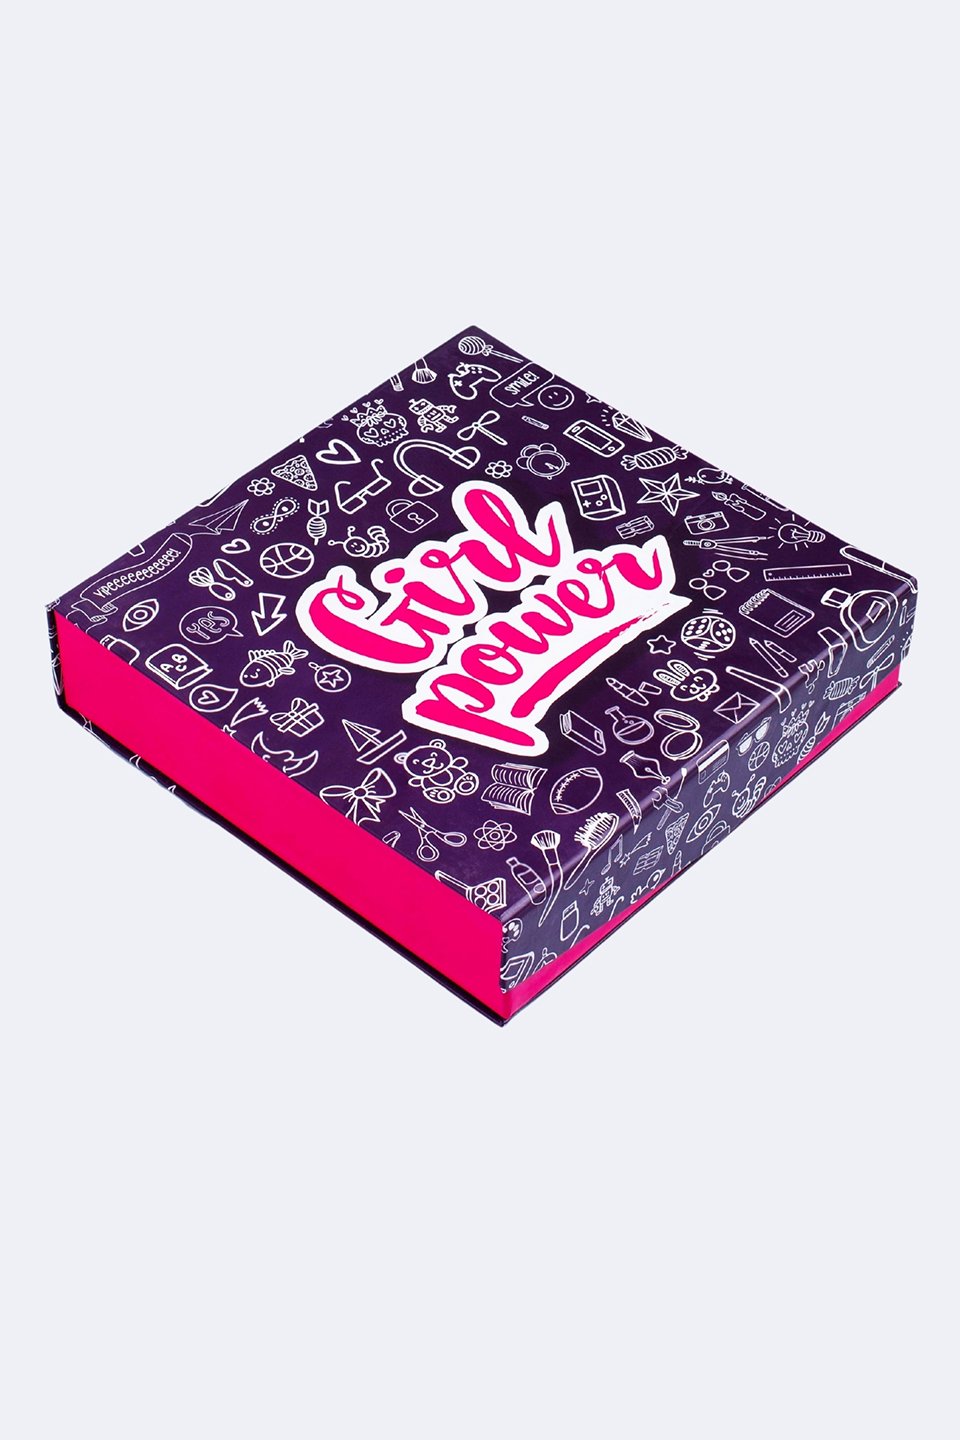 Gift Box - Girl Power - Purple